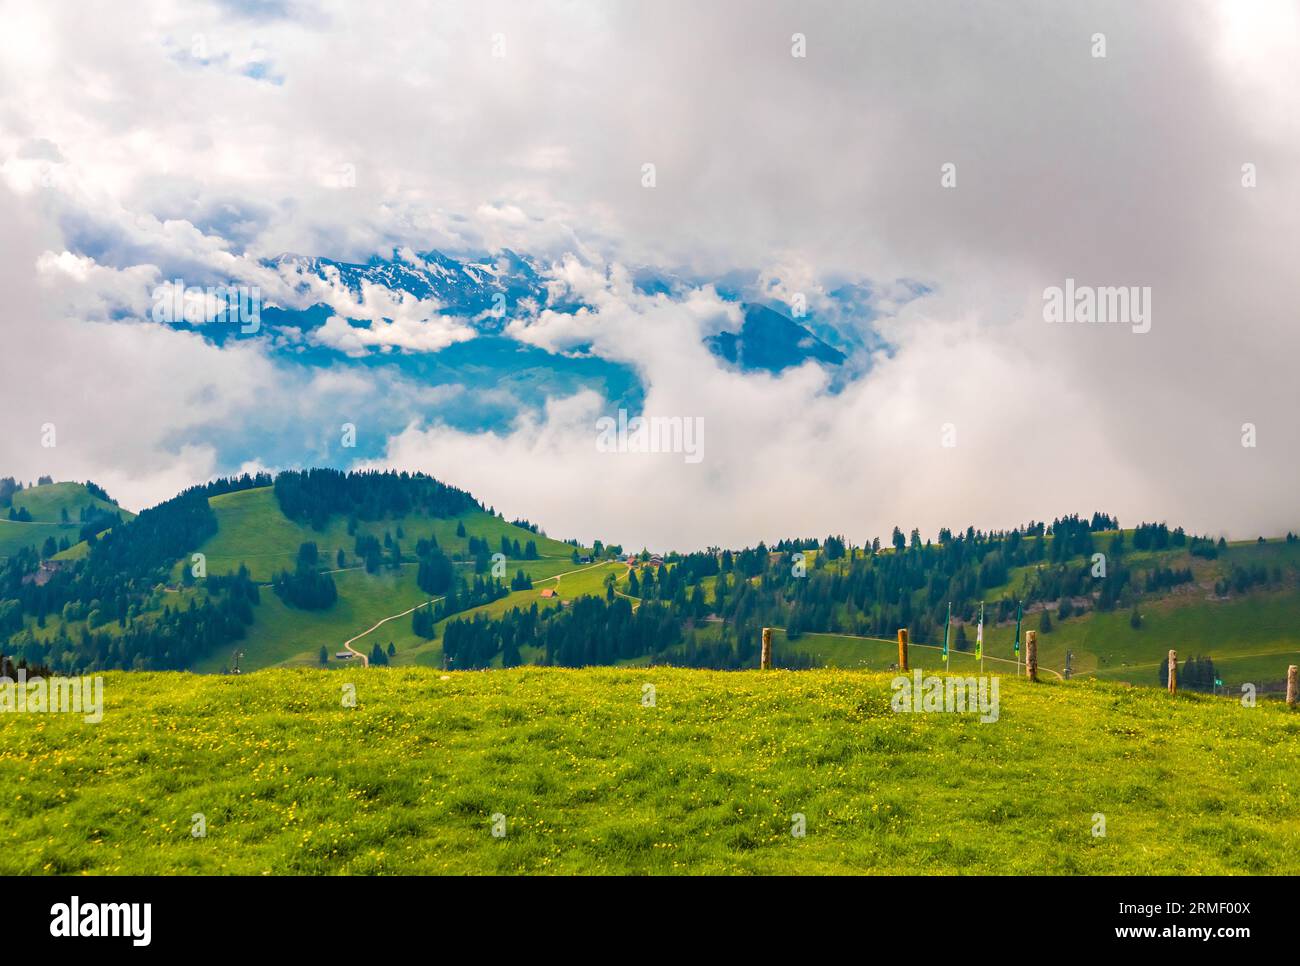 Wunderschöner Blick auf die Landschaft des Rigi Kulm mit den alpen im Hintergrund. Geologisch gesehen gehört der Rigi nicht zu den Alpen, sondern... Stockfoto